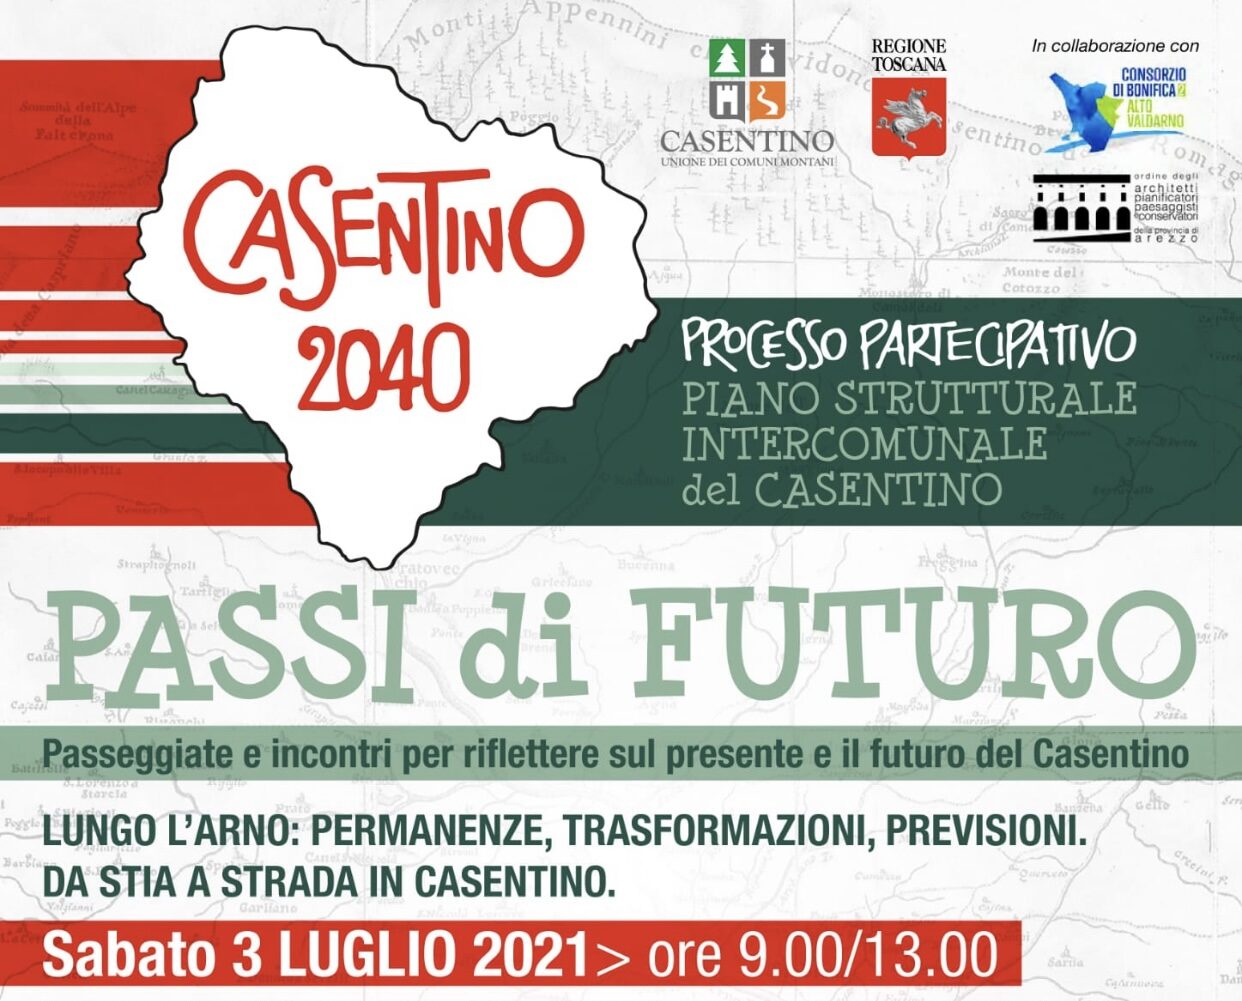 Al via una serie di passeggiate-incontro per riflettere sul futuro del Casentino realizzate nell’ambito del processo partecipativo del Piano Strutturale Intercomunale del Casentino. Si inizia sabato 3 luglio da Stia a Strada in Casentino.